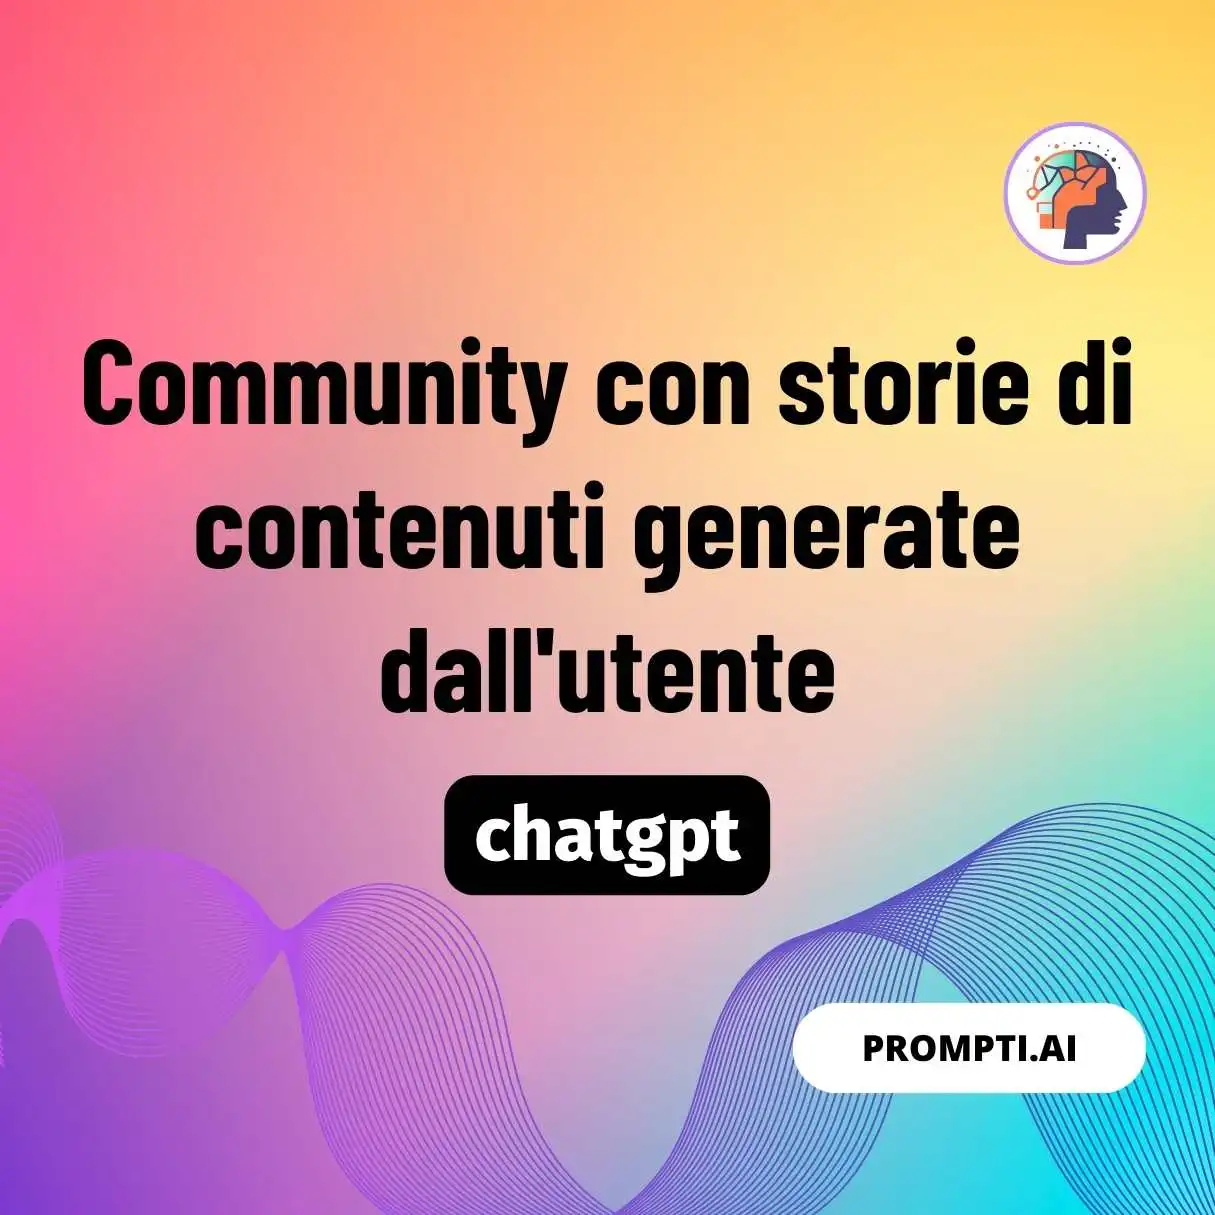 Community con storie di contenuti generate dall’utente